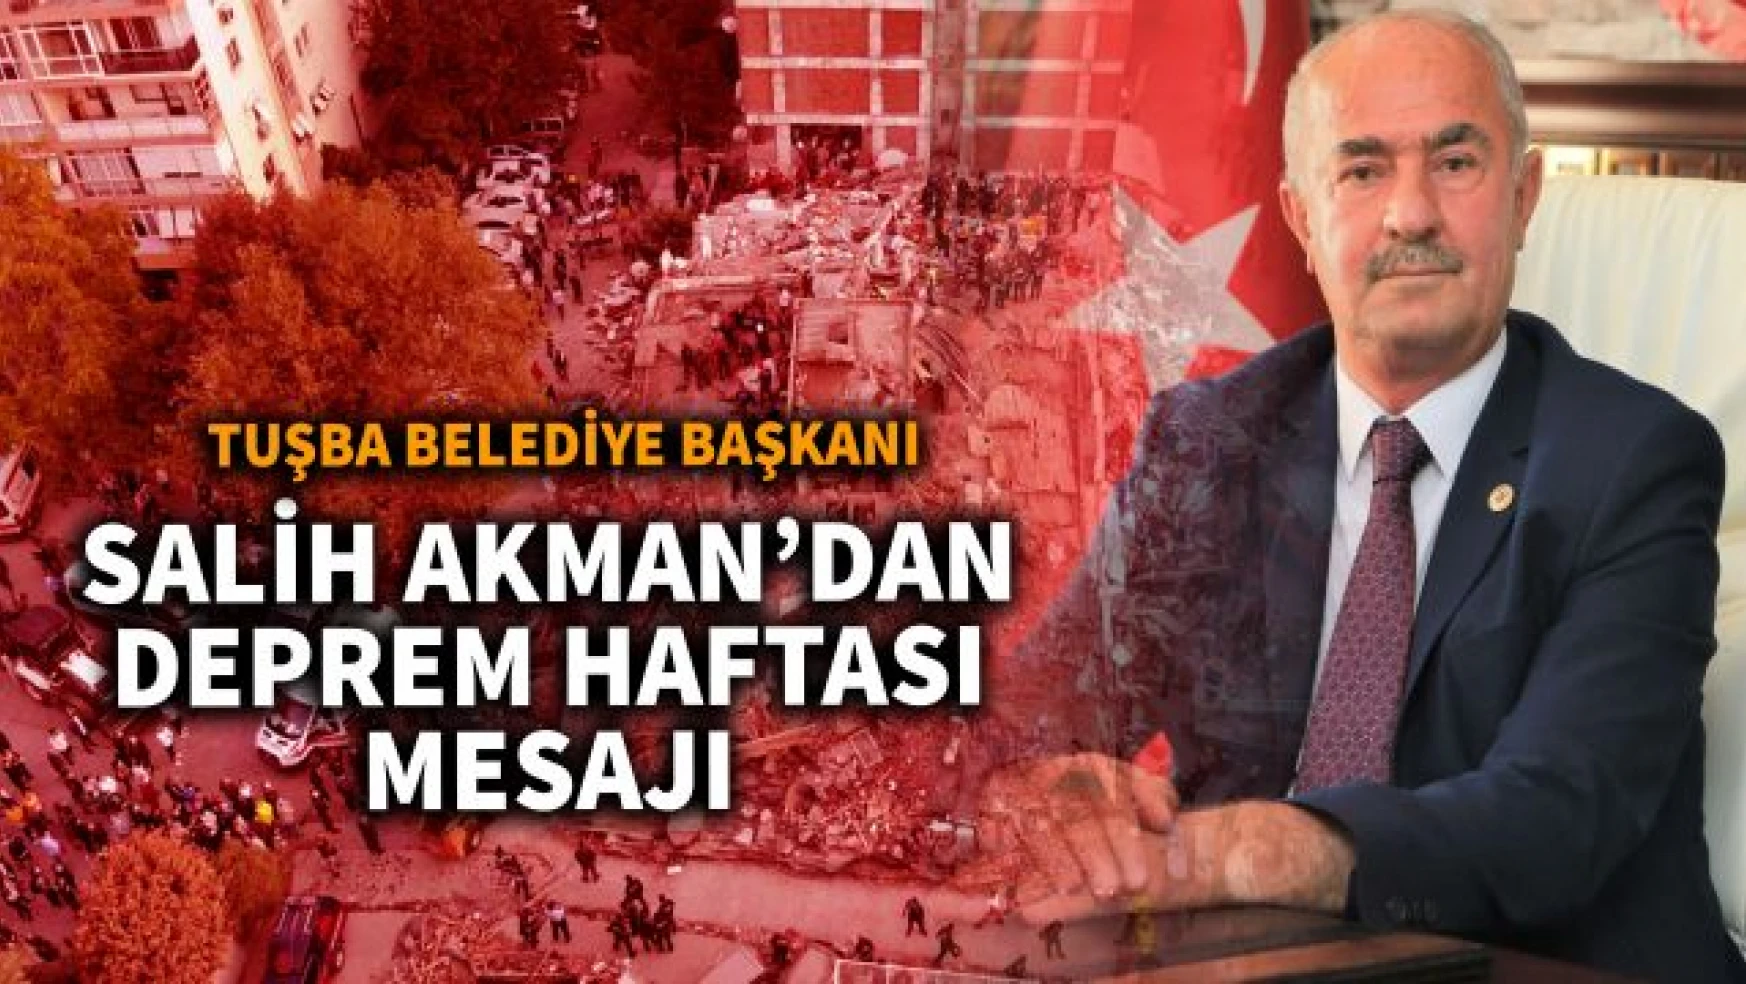 Tuşba Belediye Başkanı Salih Akman'dan 'Deprem haftası' mesajı